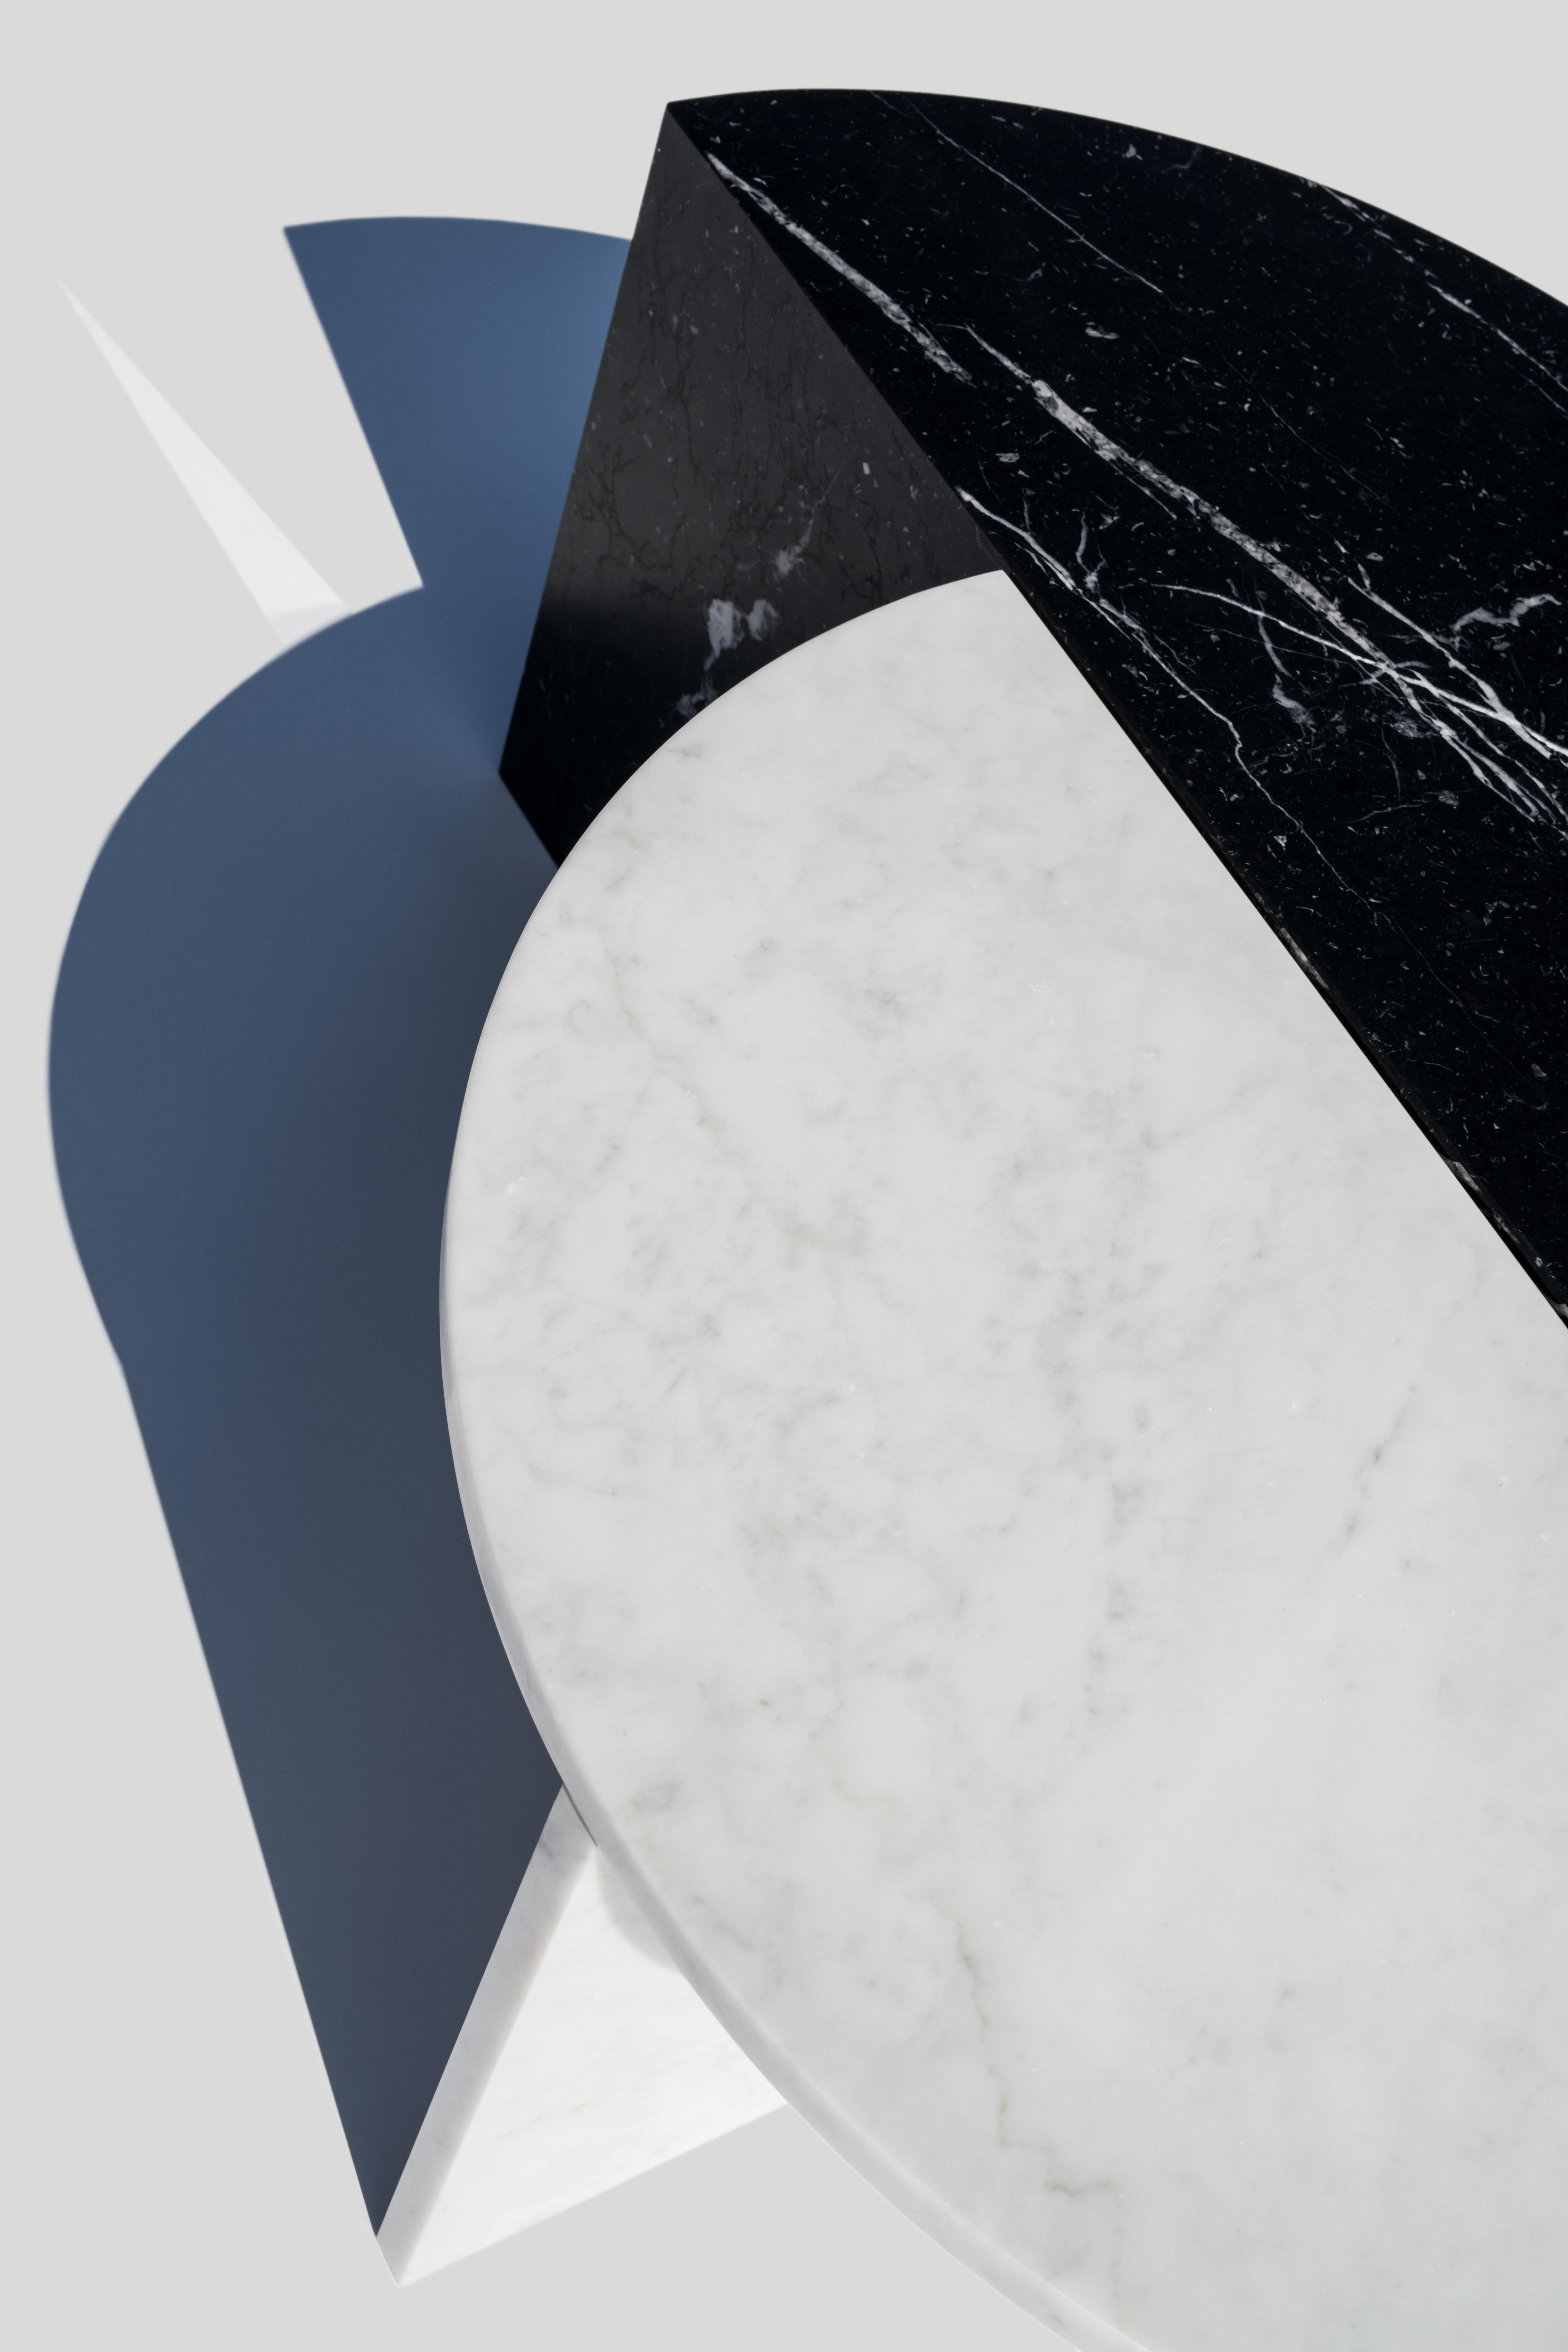 MATERIALIEN: Marmor;
Marmor: Nero Marquina (schwarz); Carrara (weiß)
Abmessungen: 70 x 35 x 35
Designer: Sebastian Scherer

Diese Couchtische lassen sich auf vielfältige Weise kombinieren, so dass ein interessanter Mix aus Form und Material